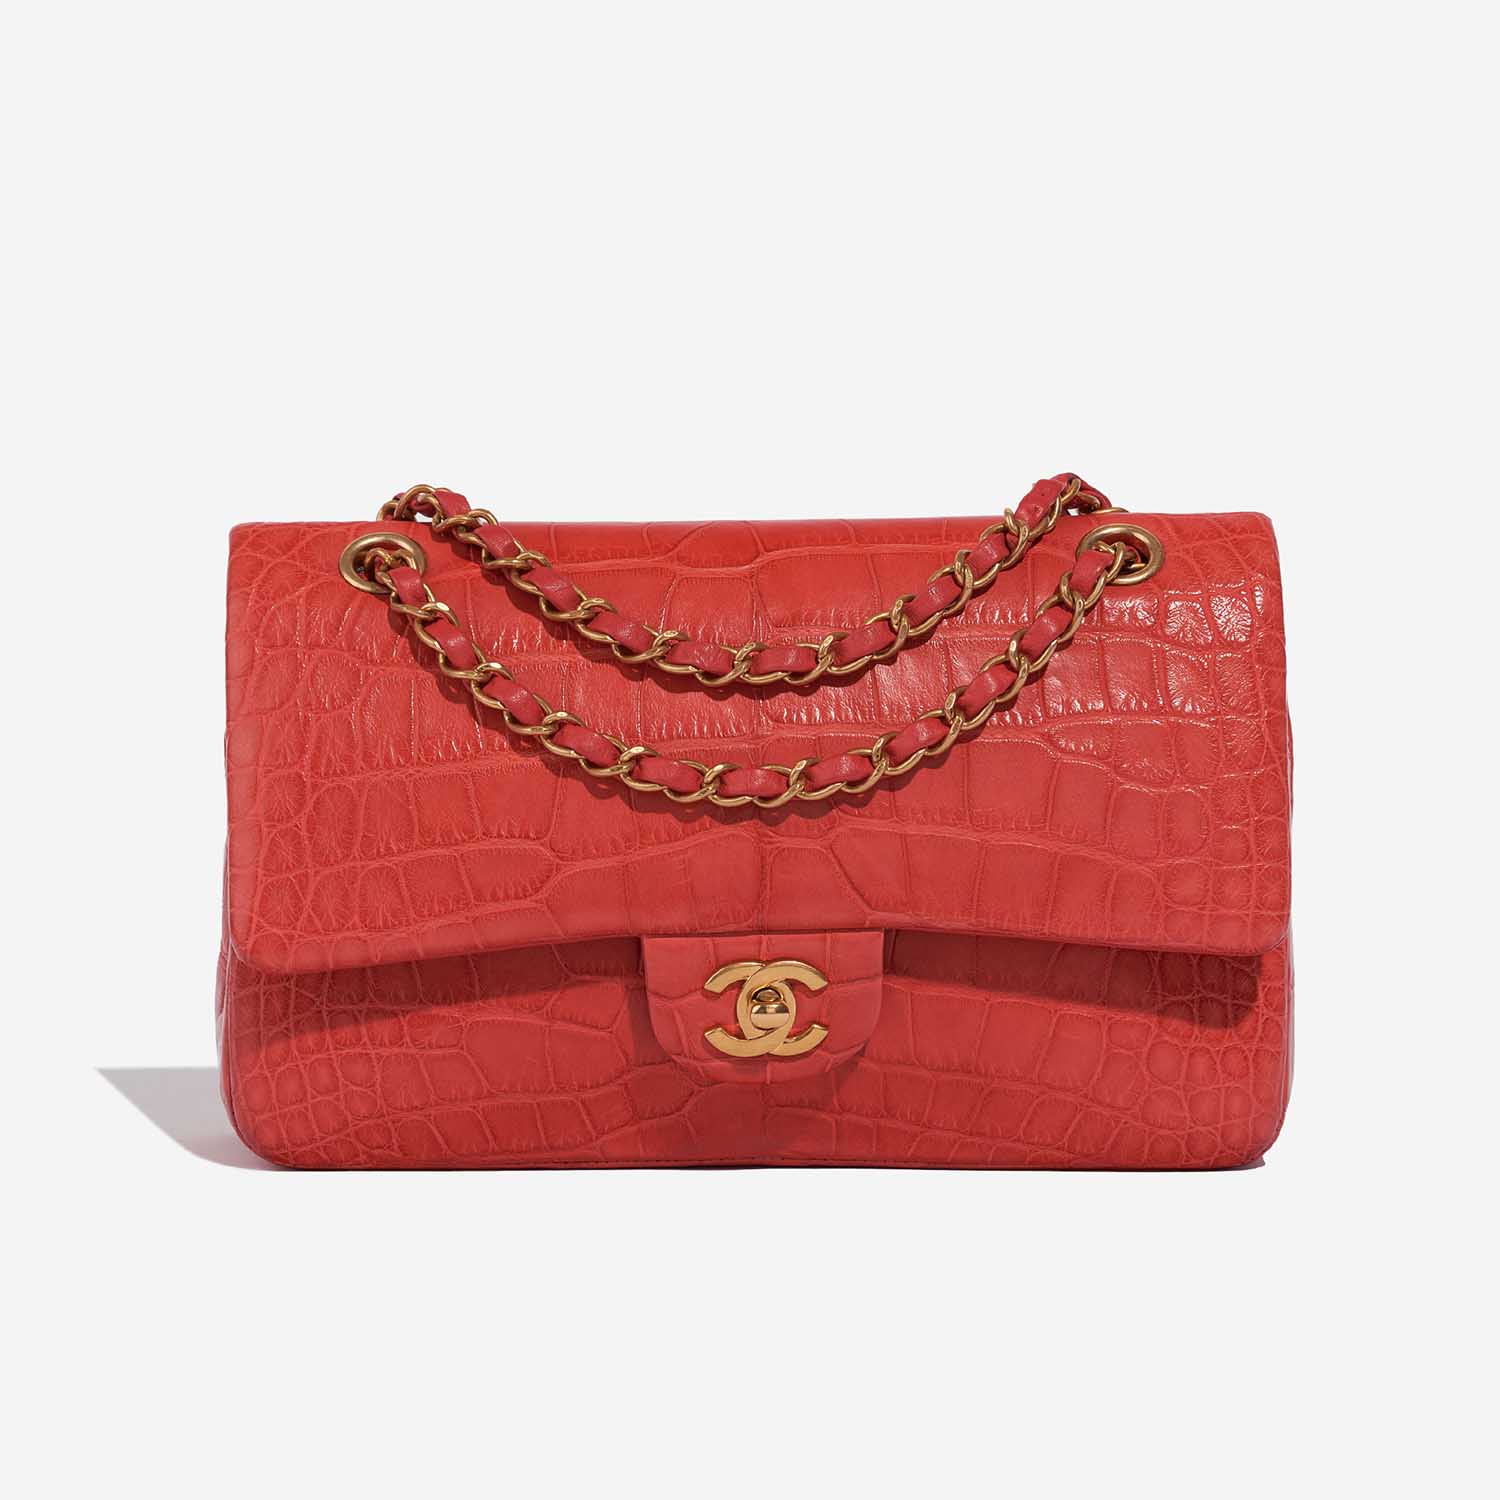 Chanel Timeless Medium Rot 2F S | Verkaufen Sie Ihre Designer-Tasche auf Saclab.com